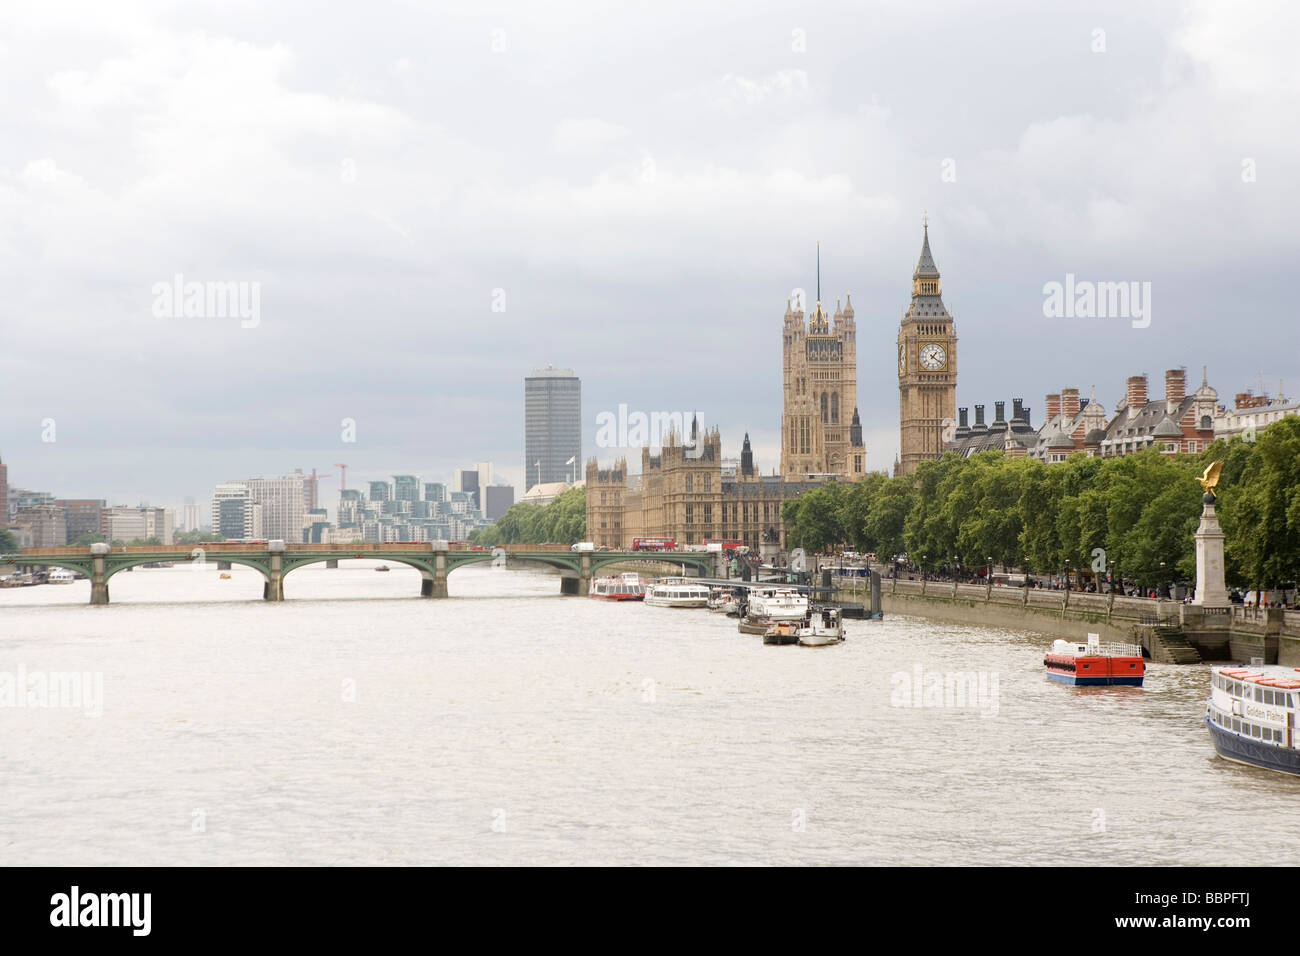 La ville de Londres Angleterre Royaume-Uni Banque D'Images